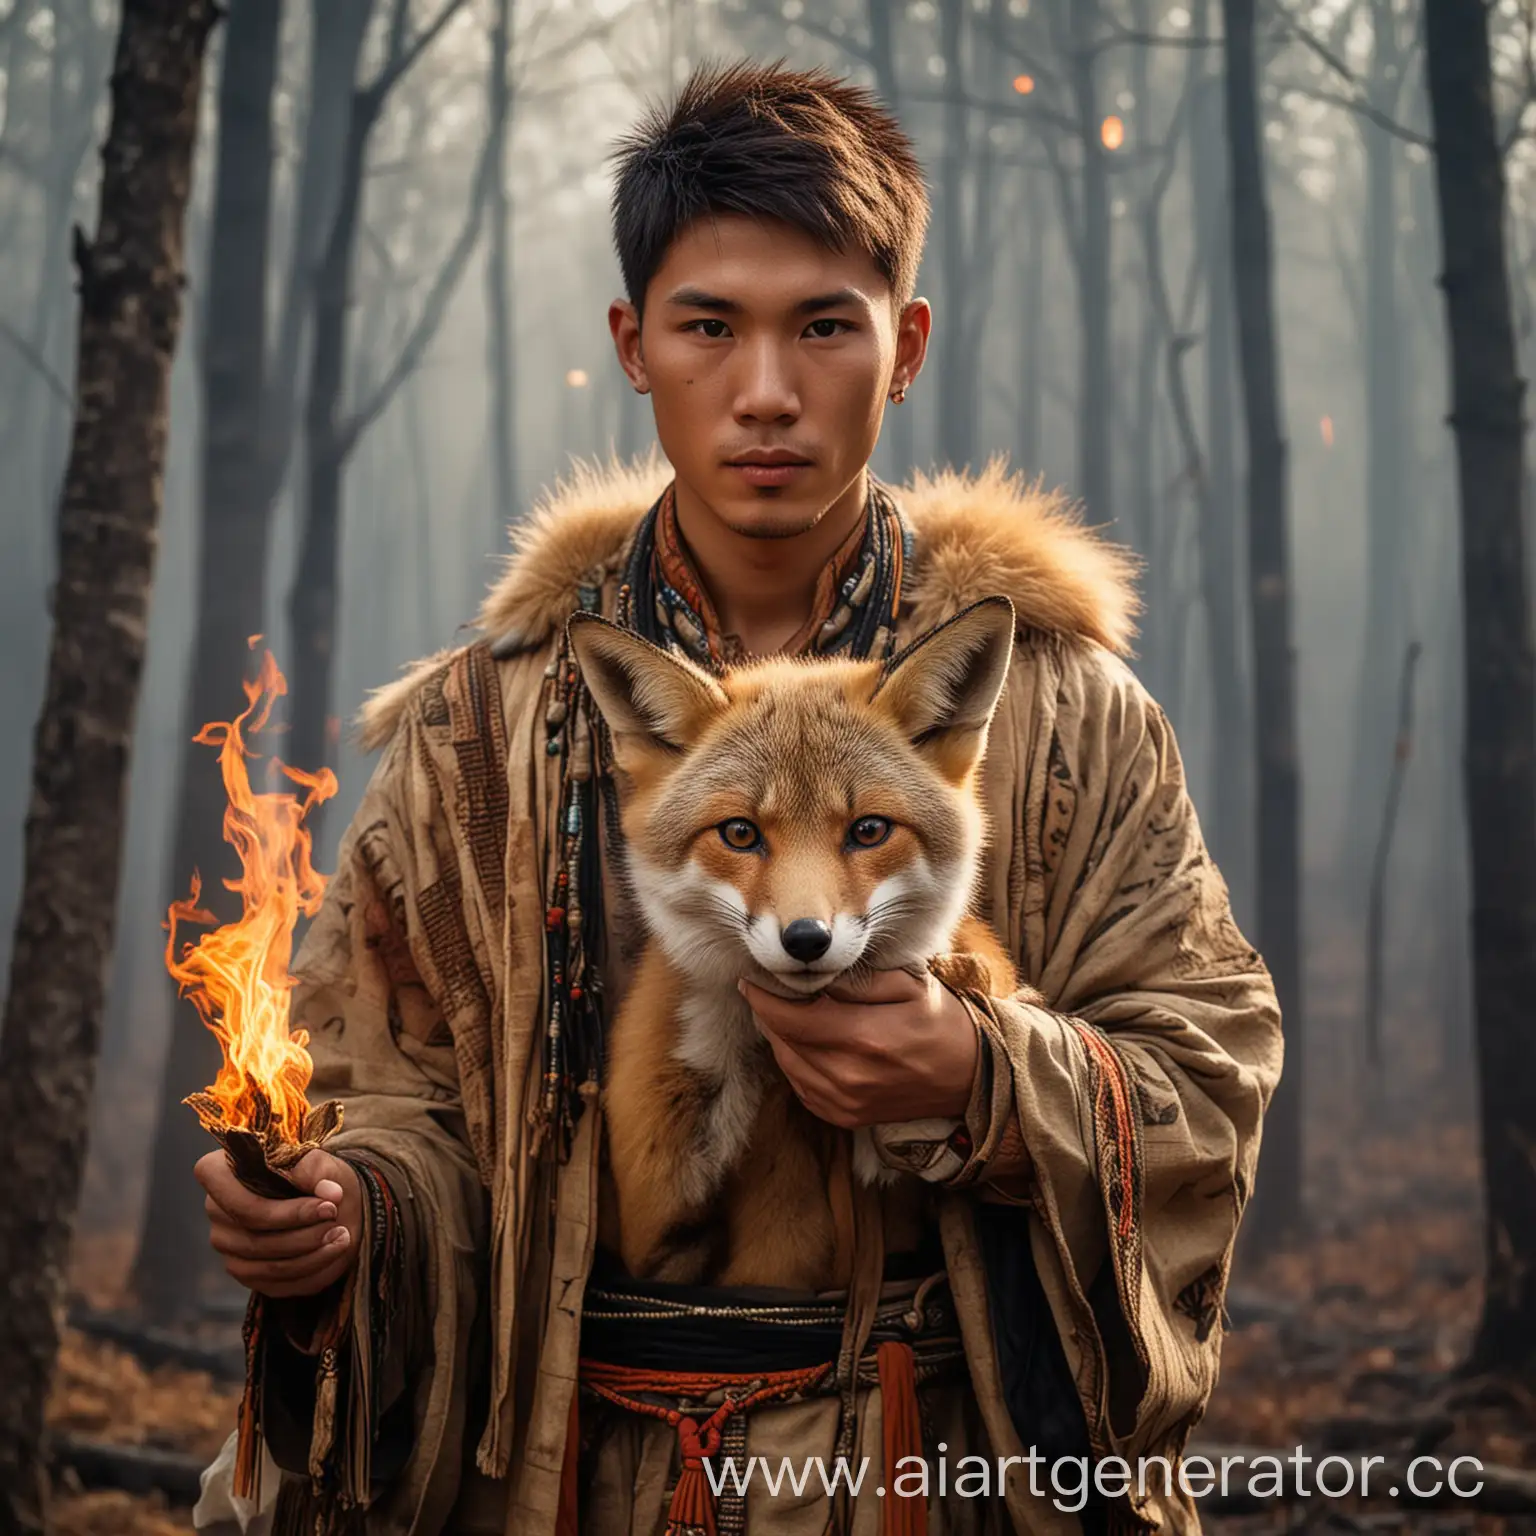 Молодой парень азиат, с короткими волосами, карими глазами, в одежде шаманов, держит на руках лису, на фоне горящего леса